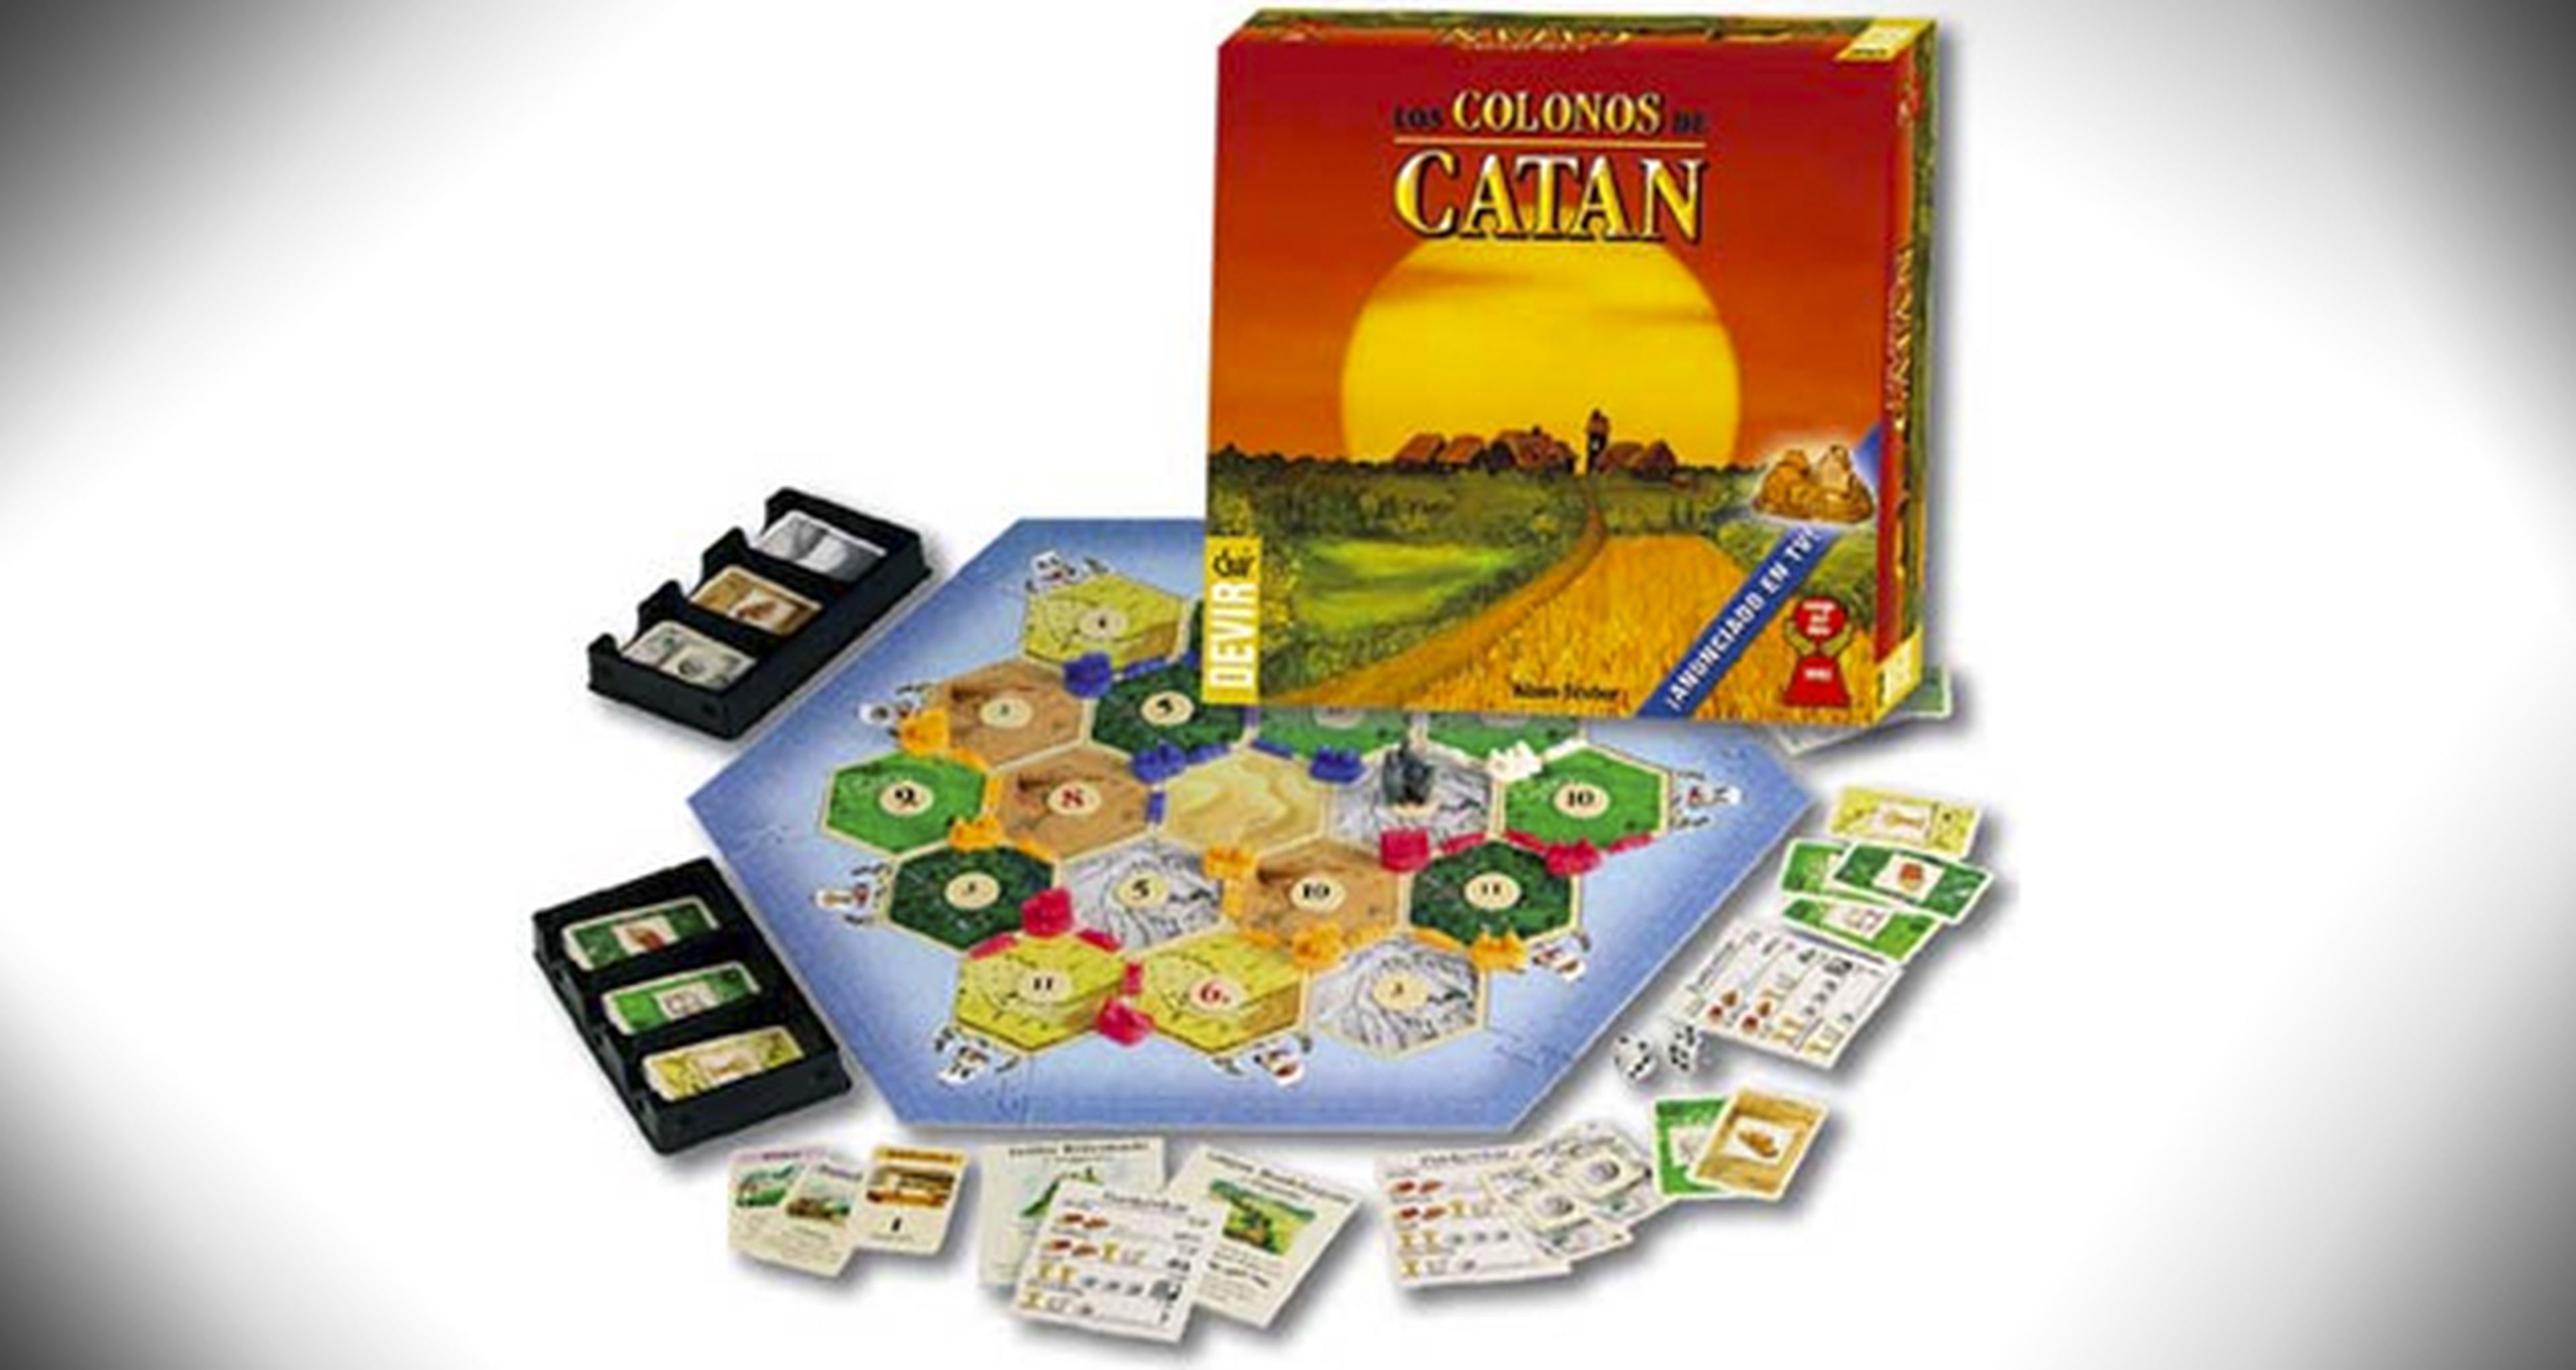 Los colonos de Catán: el juego tendrá su versión cinematográfica